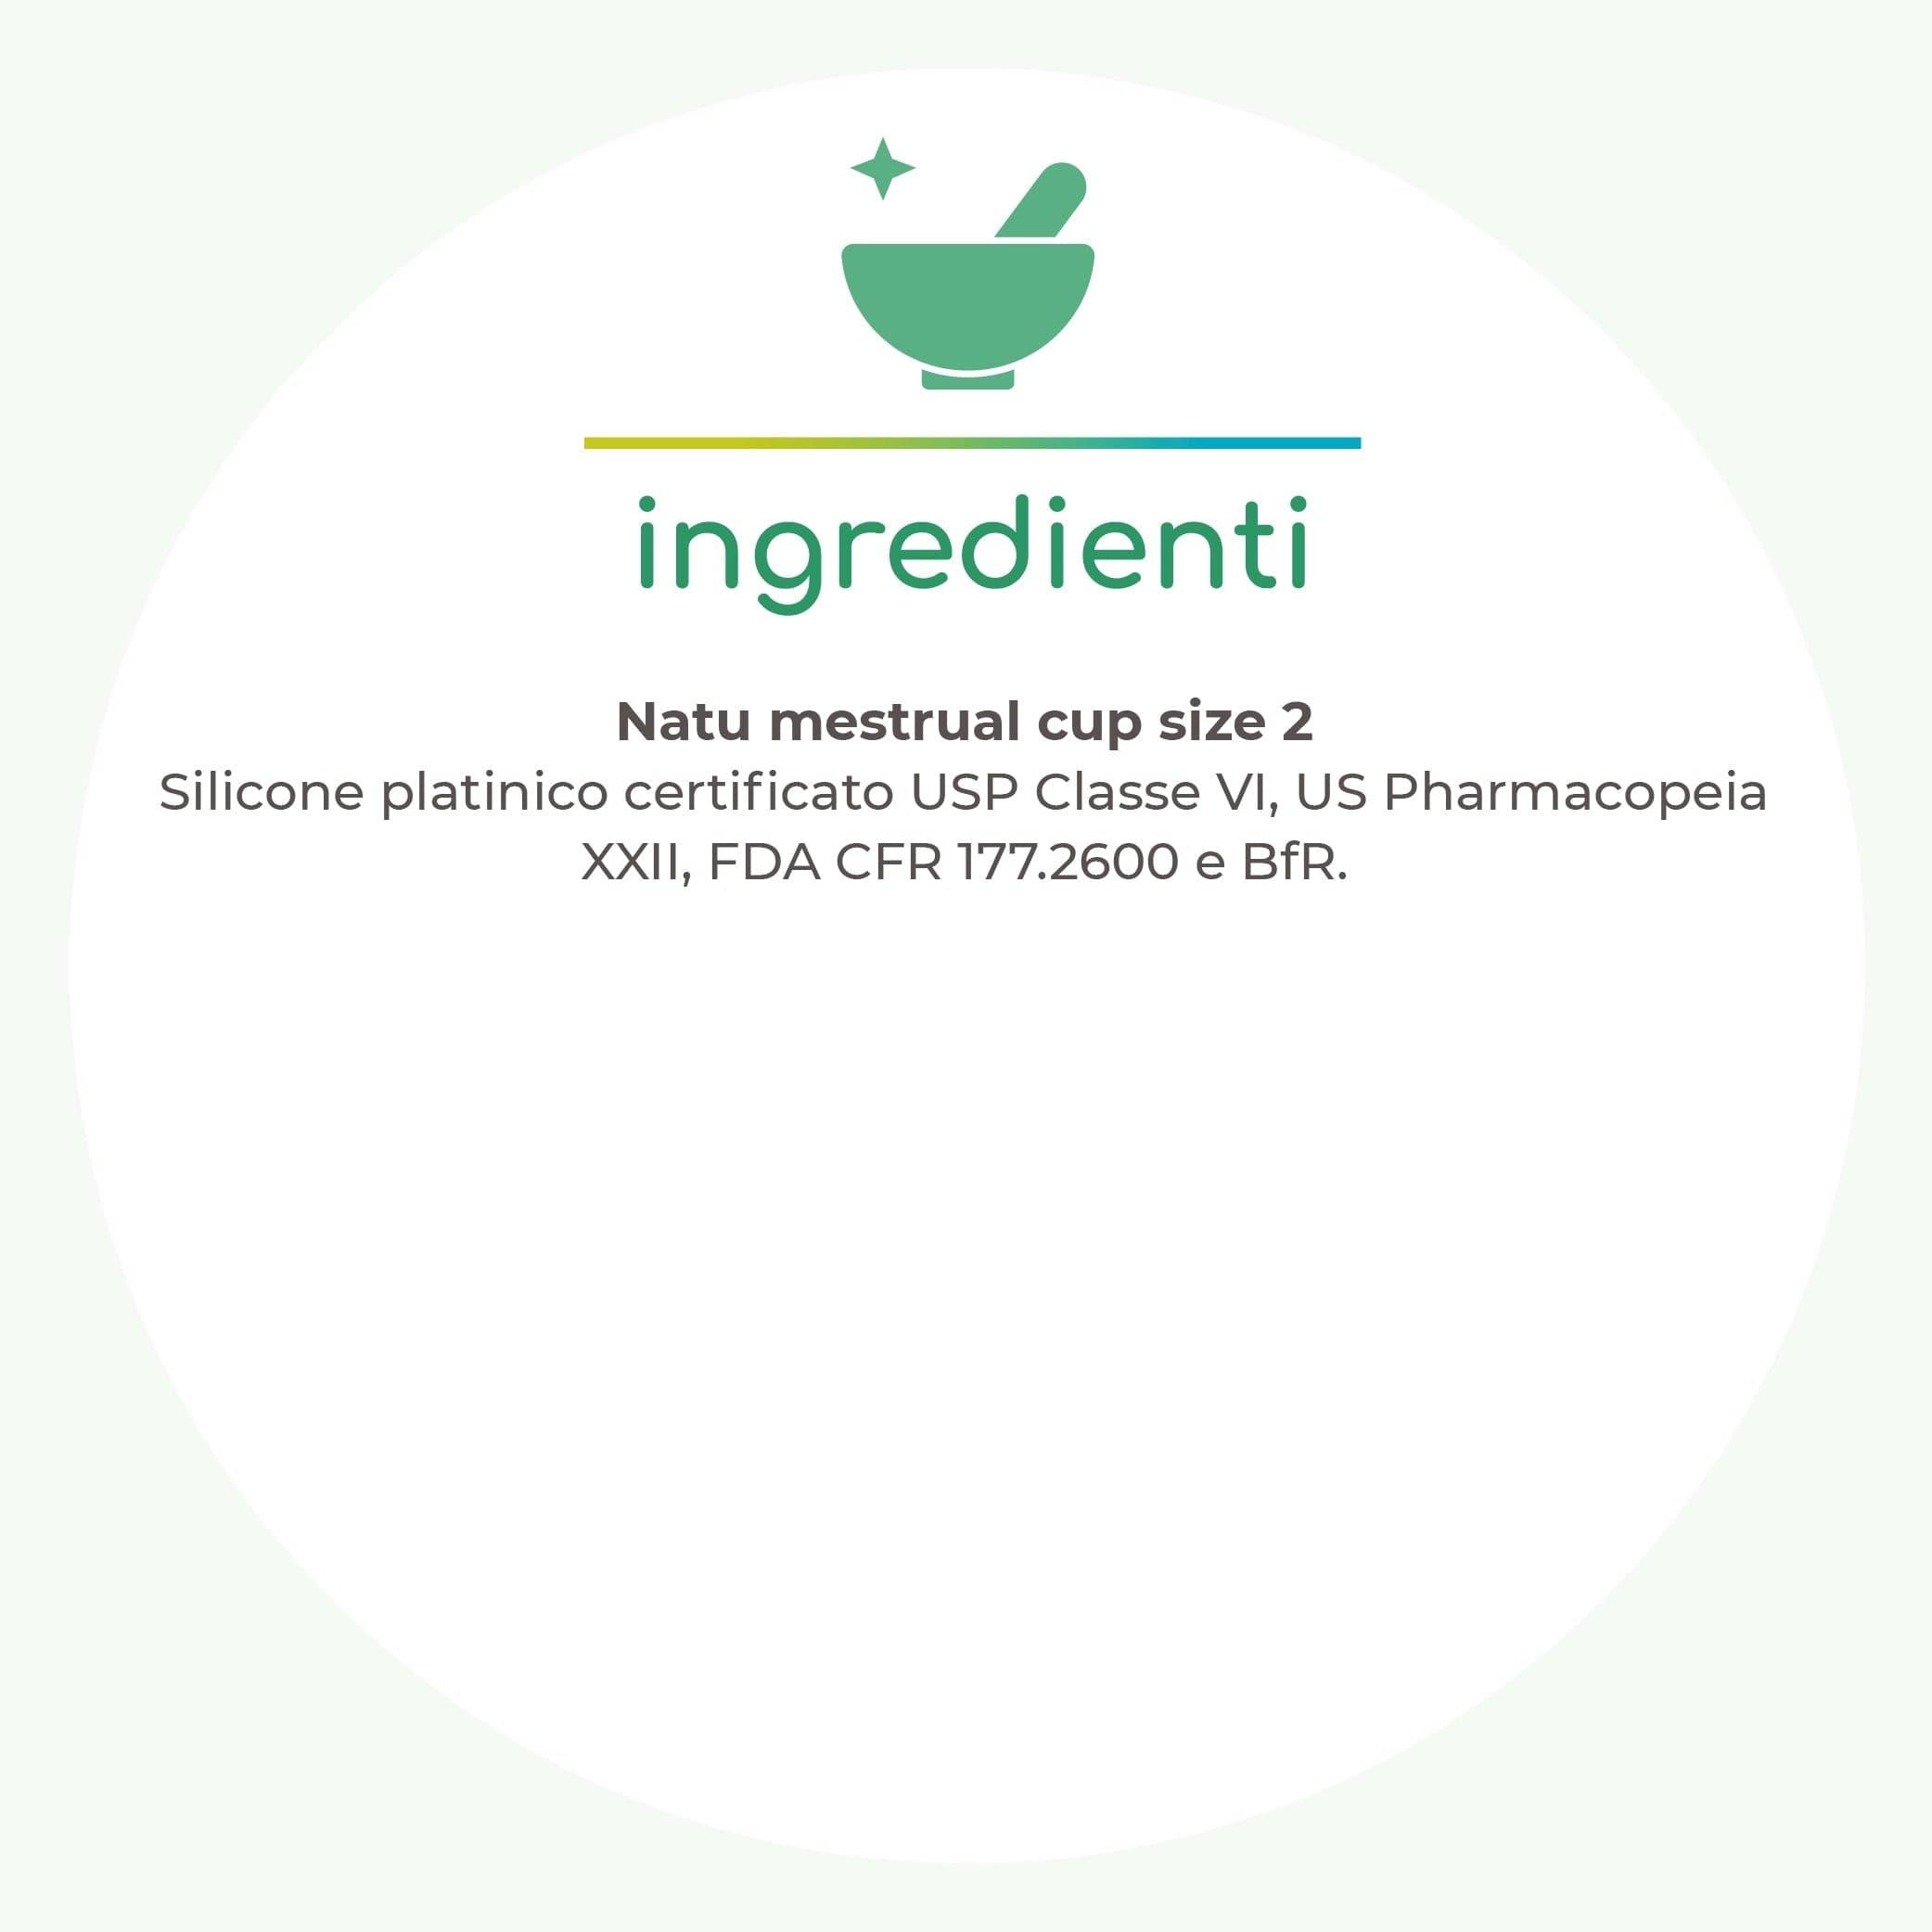 Coppetta mestruale ipoallergenica Natù, size 2 - Greenatural